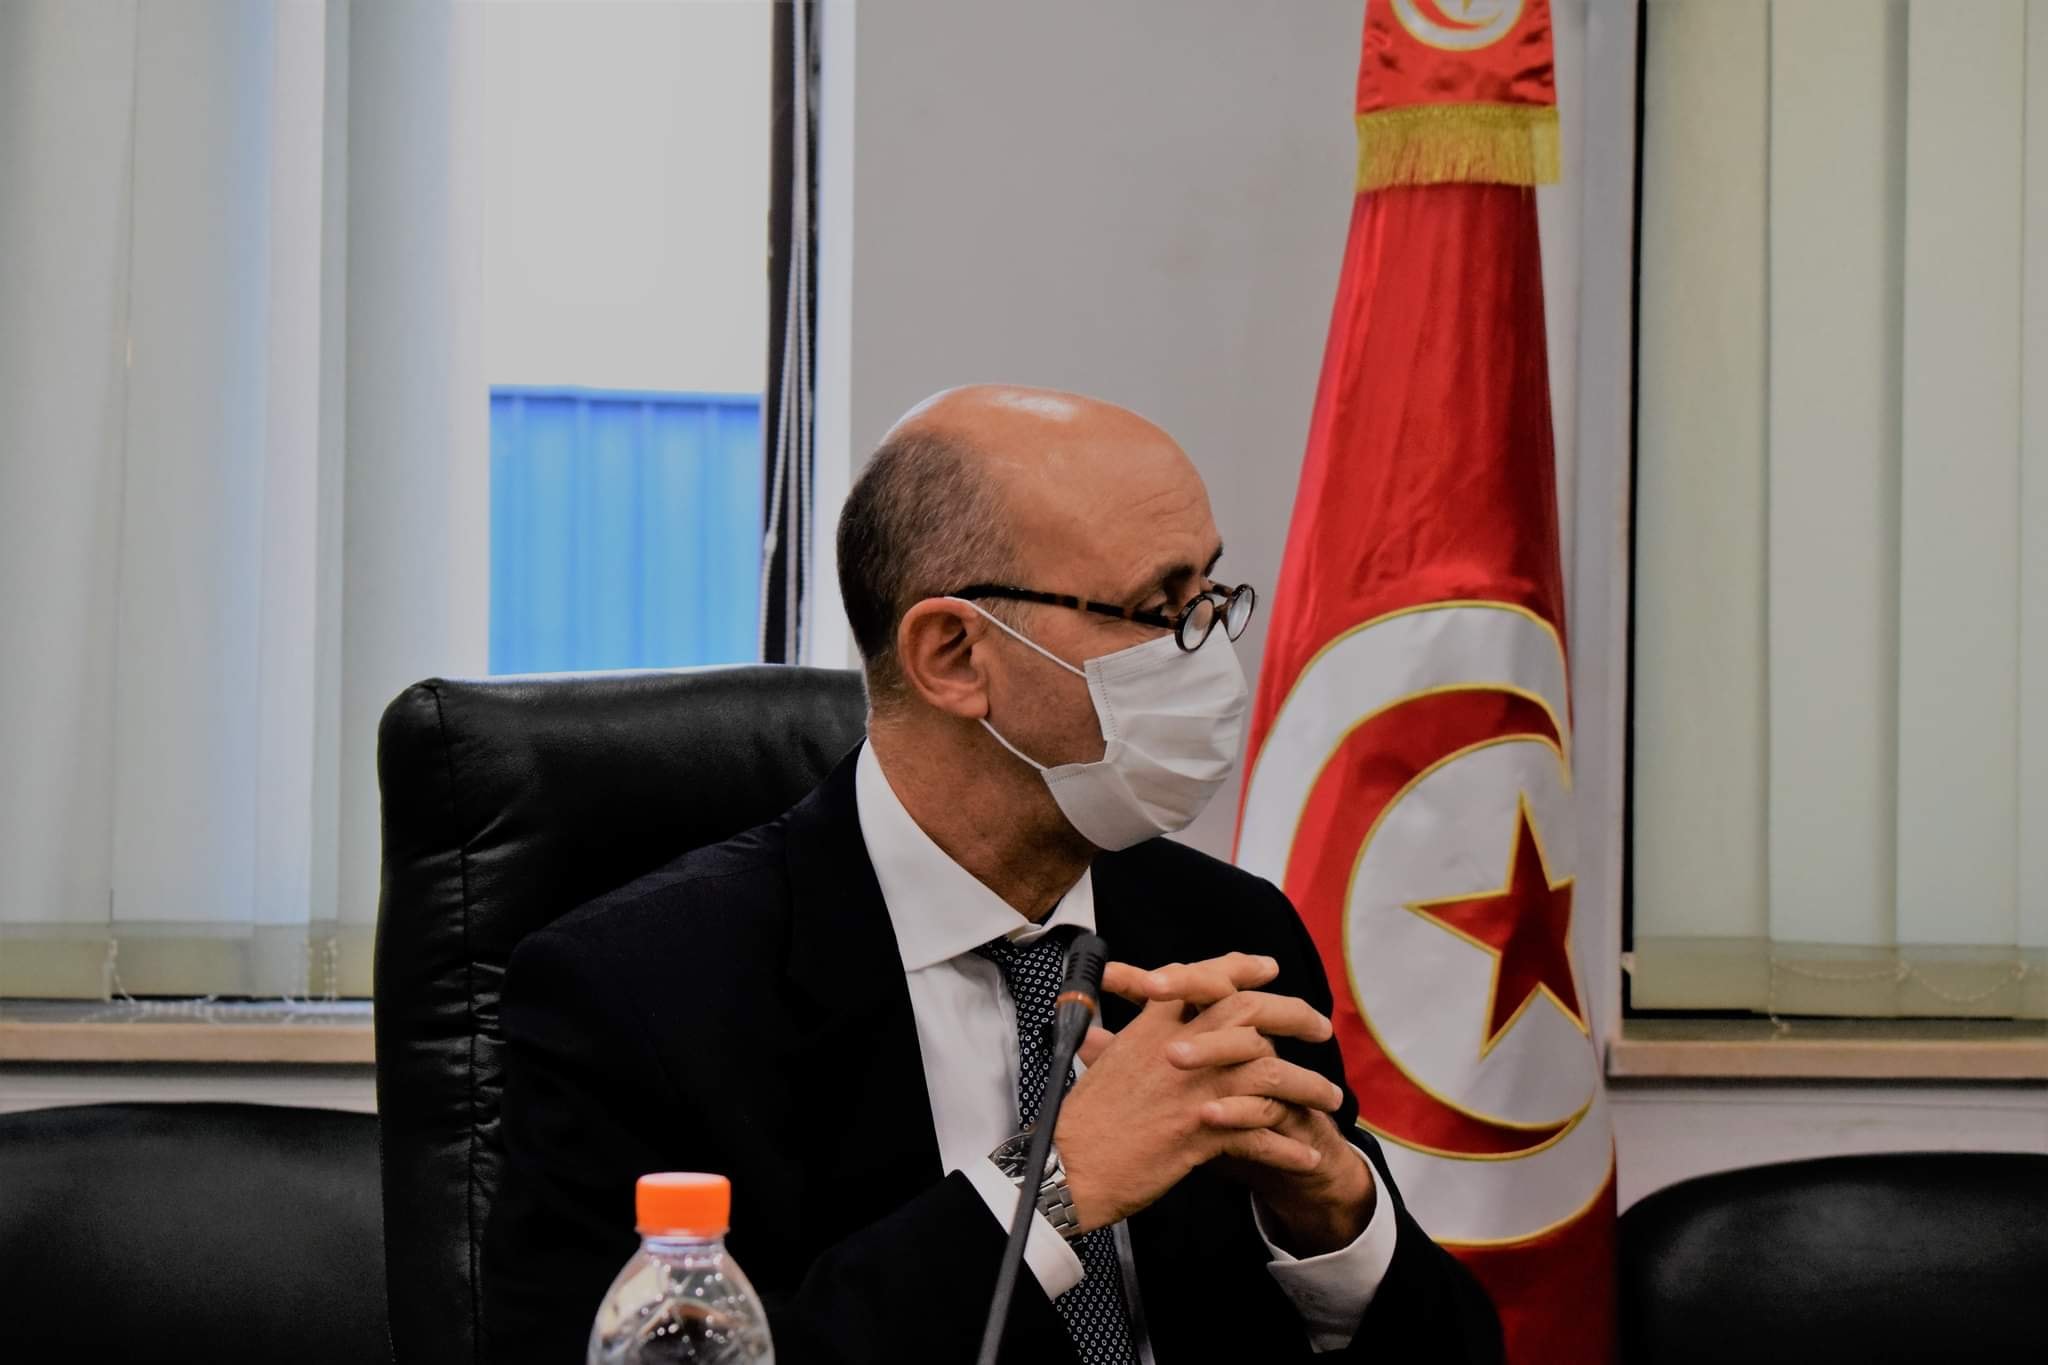 Le ministre de l’Agriculture parle de la station de dessalement d’eau de mer à Sfax [Audio]